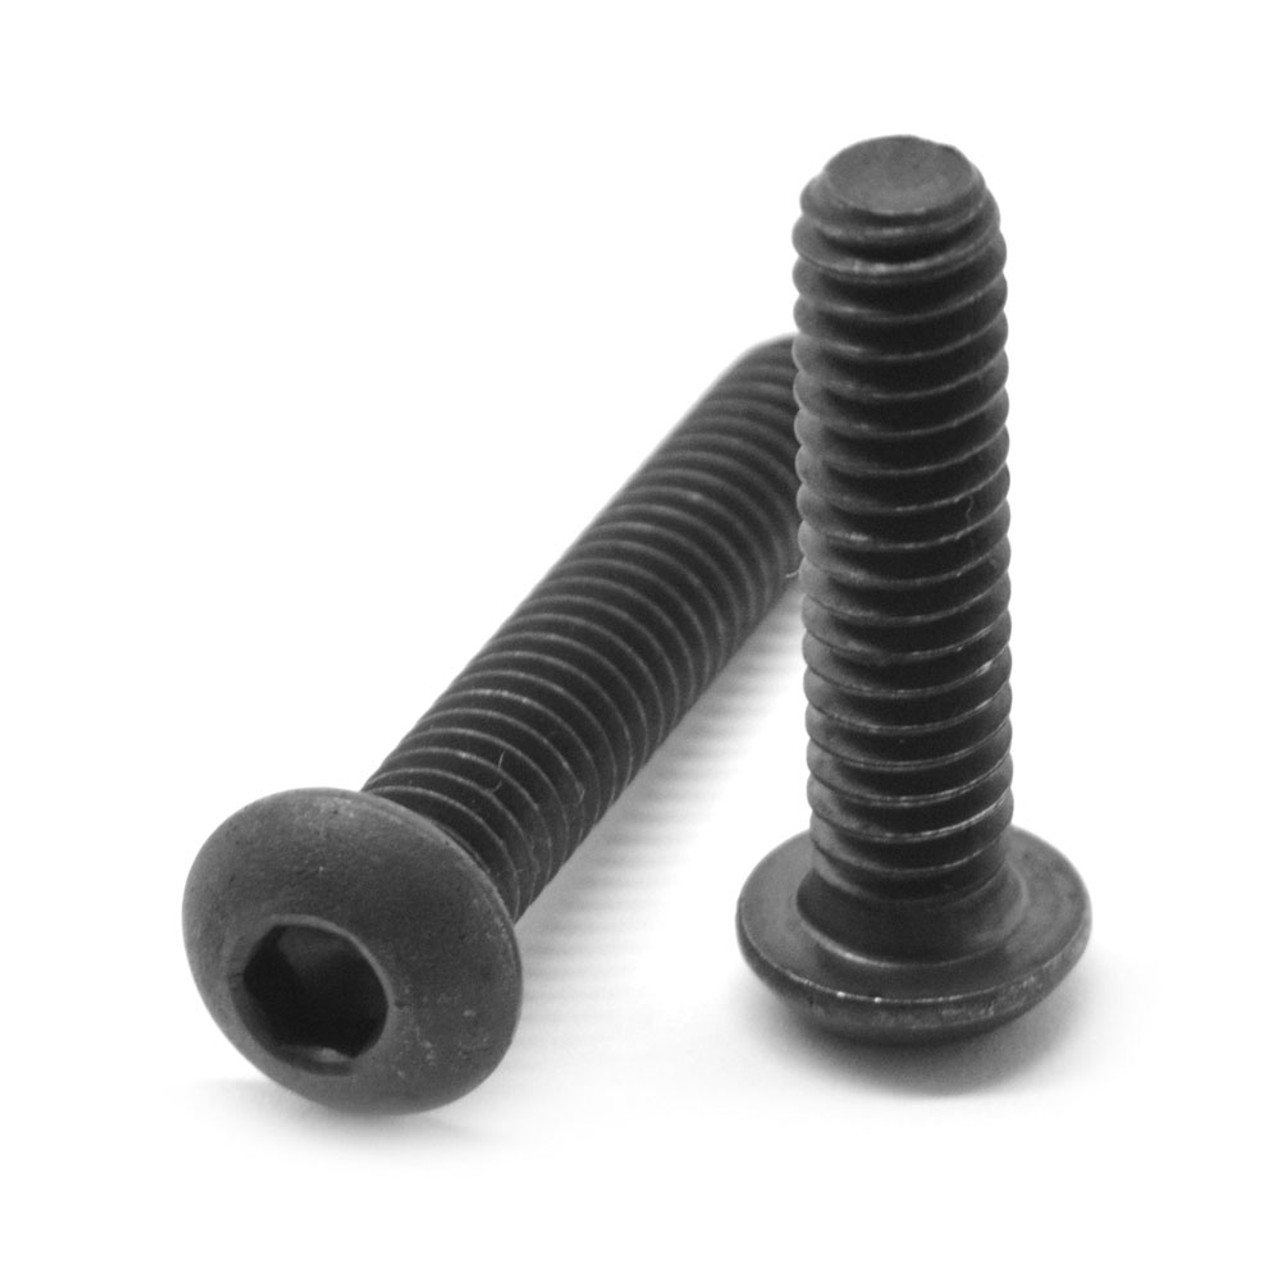 #10-24 x 1/2" (FT) Coarse Thread Socket Button Head Cap Screw Alloy Steel Black Oxide